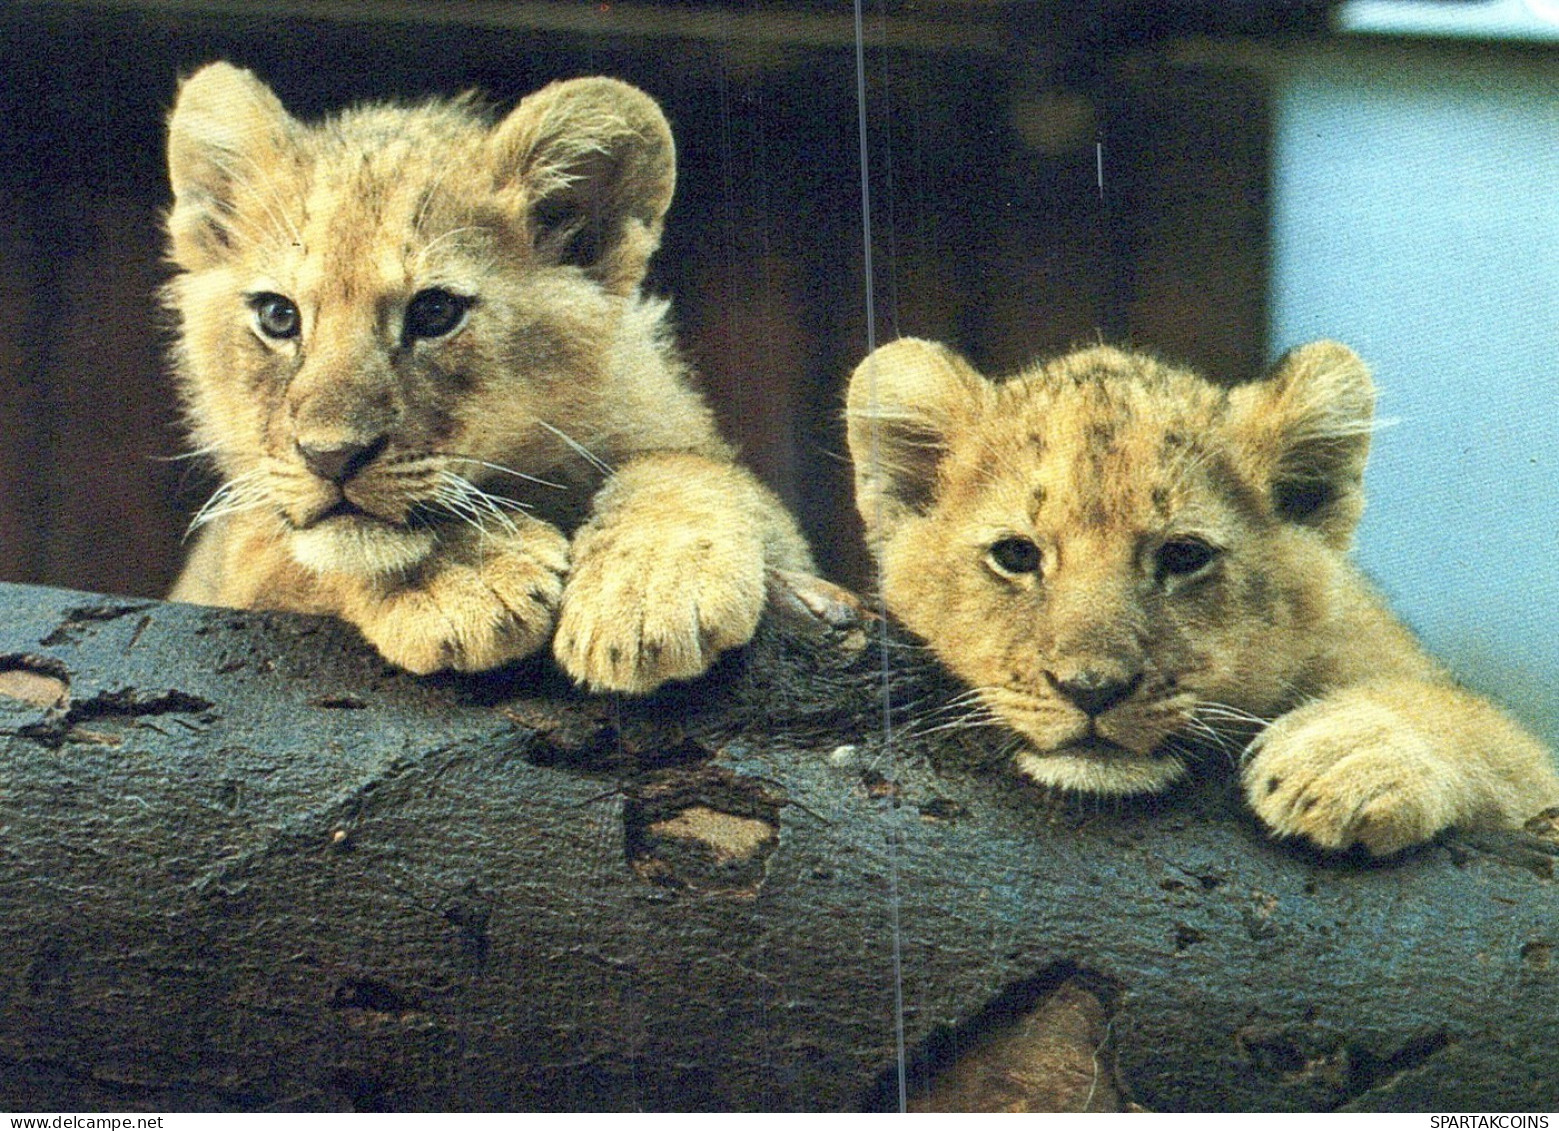 LION RAUBKATZE Tier Vintage Ansichtskarte Postkarte CPSM #PAM003.DE - Leeuwen